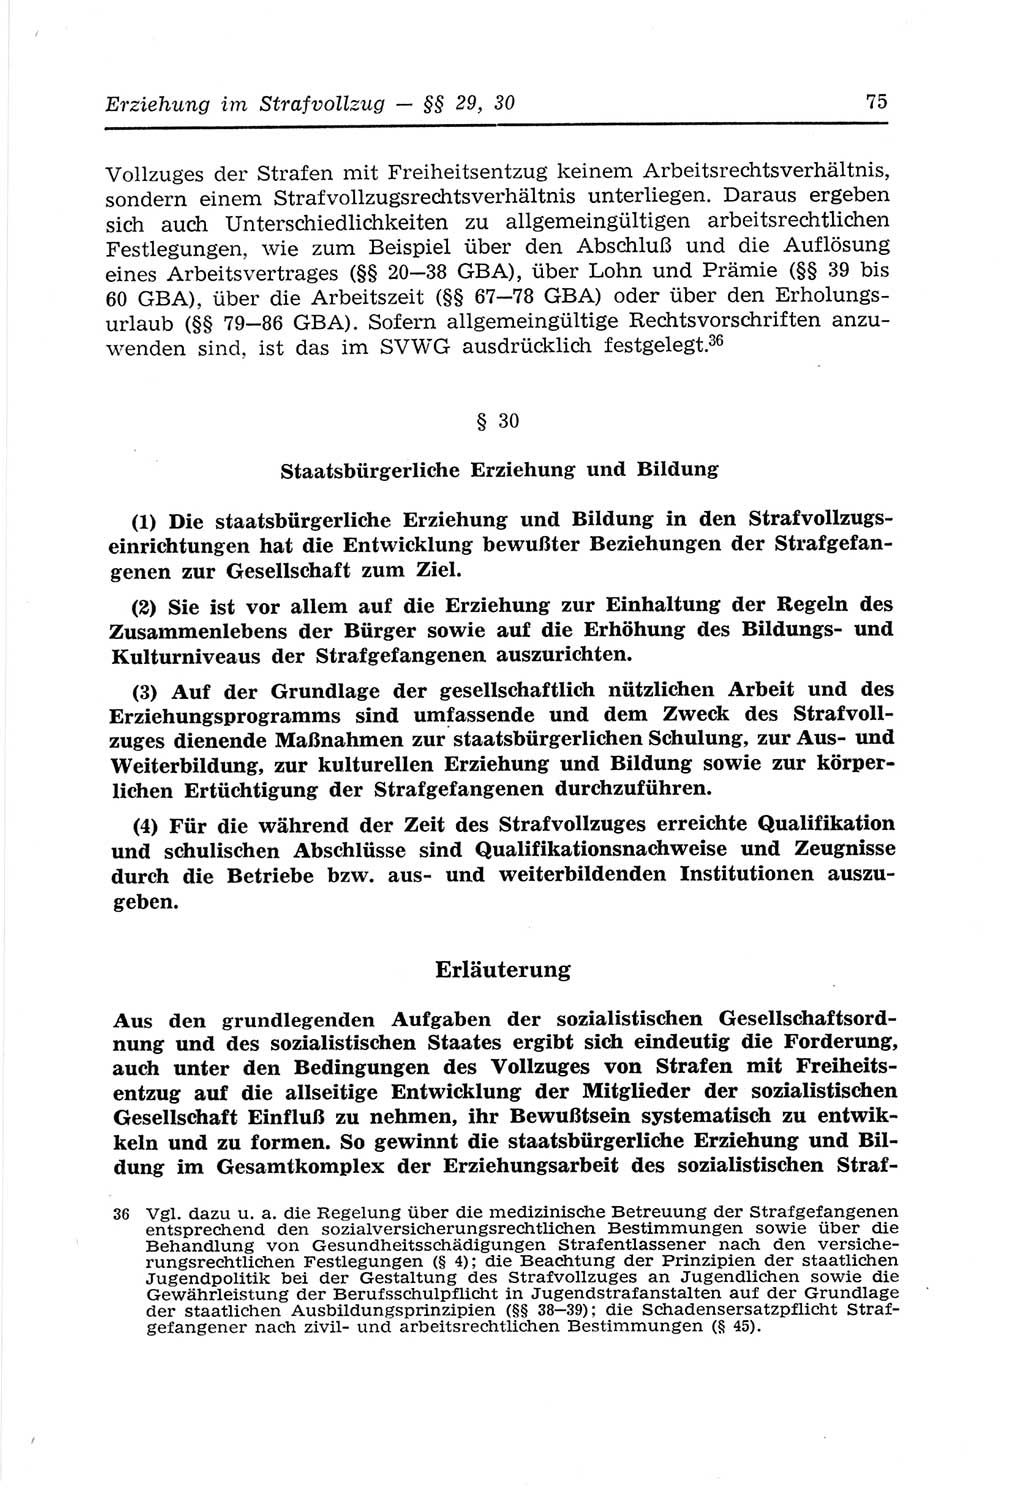 Strafvollzugs- und Wiedereingliederungsgesetz (SVWG) der Deutschen Demokratischen Republik (DDR) 1968, Seite 75 (SVWG DDR 1968, S. 75)